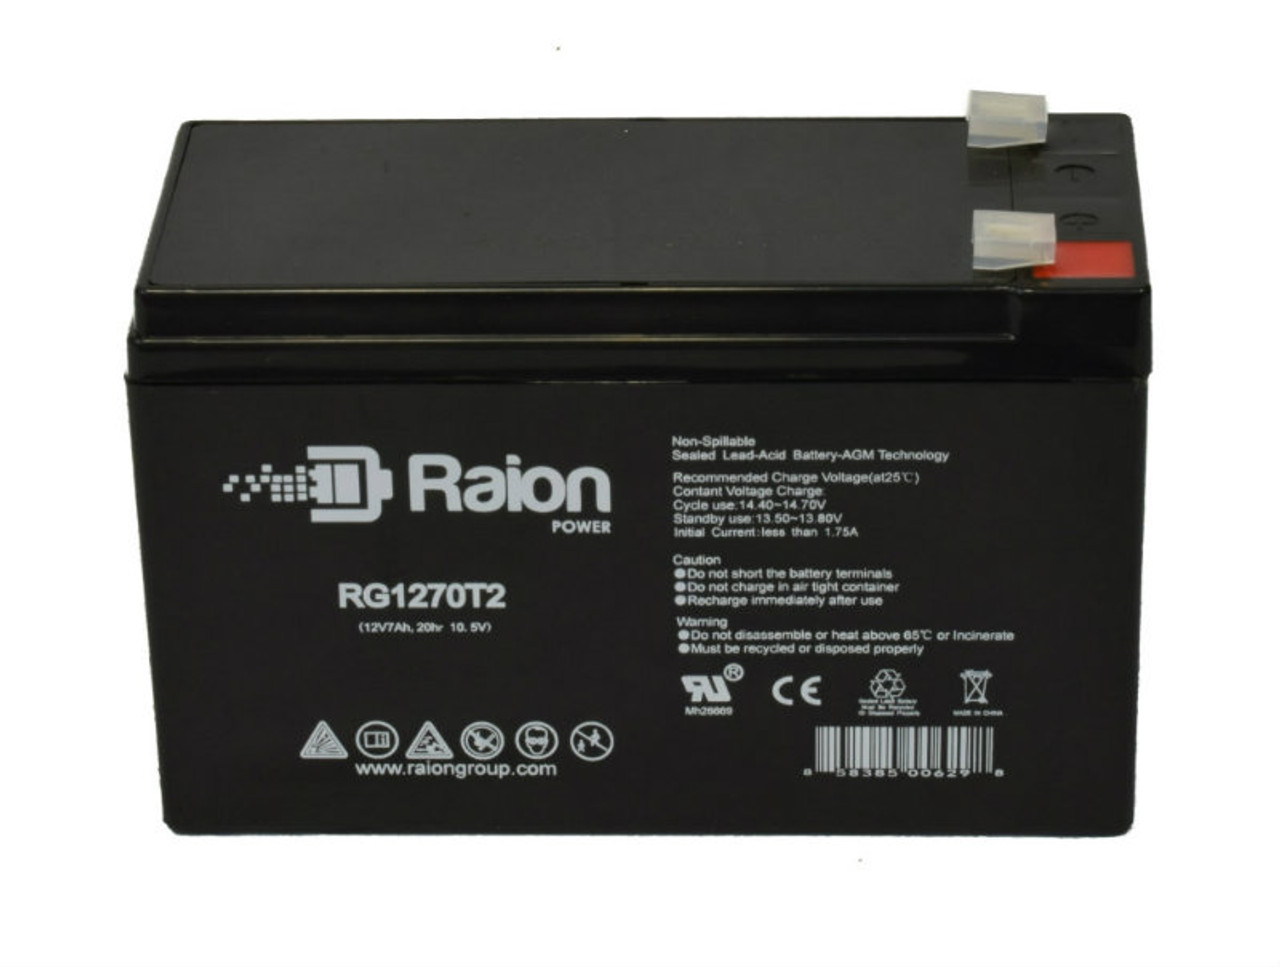 Raion Power RG1270T1 12V 7Ah Lead Acid Battery for ADT Security Alarm